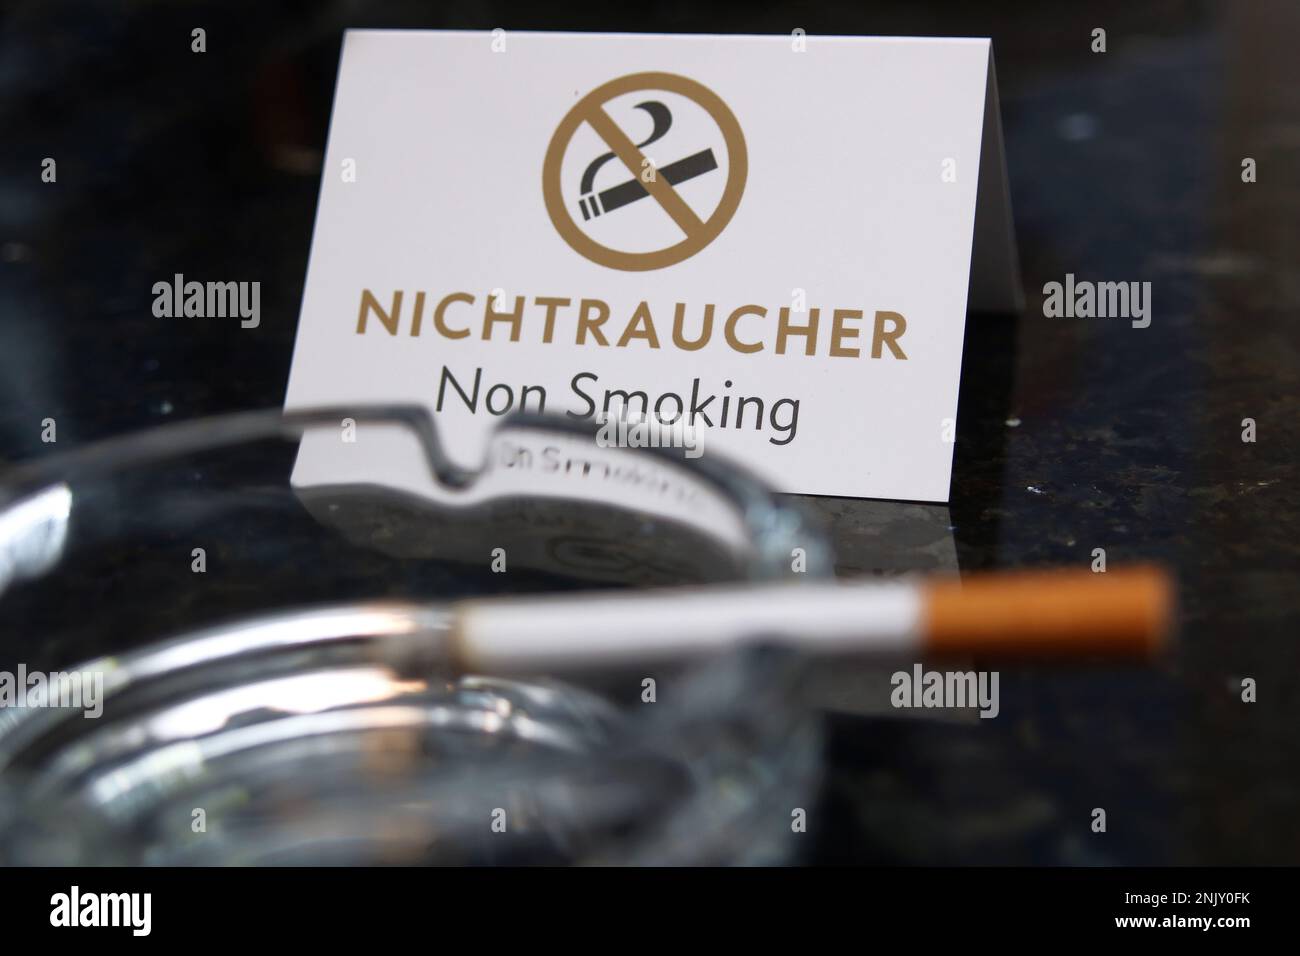 Lustiger Keramik Aschenbecher mit Rauchverbot Schild Stockfotografie - Alamy